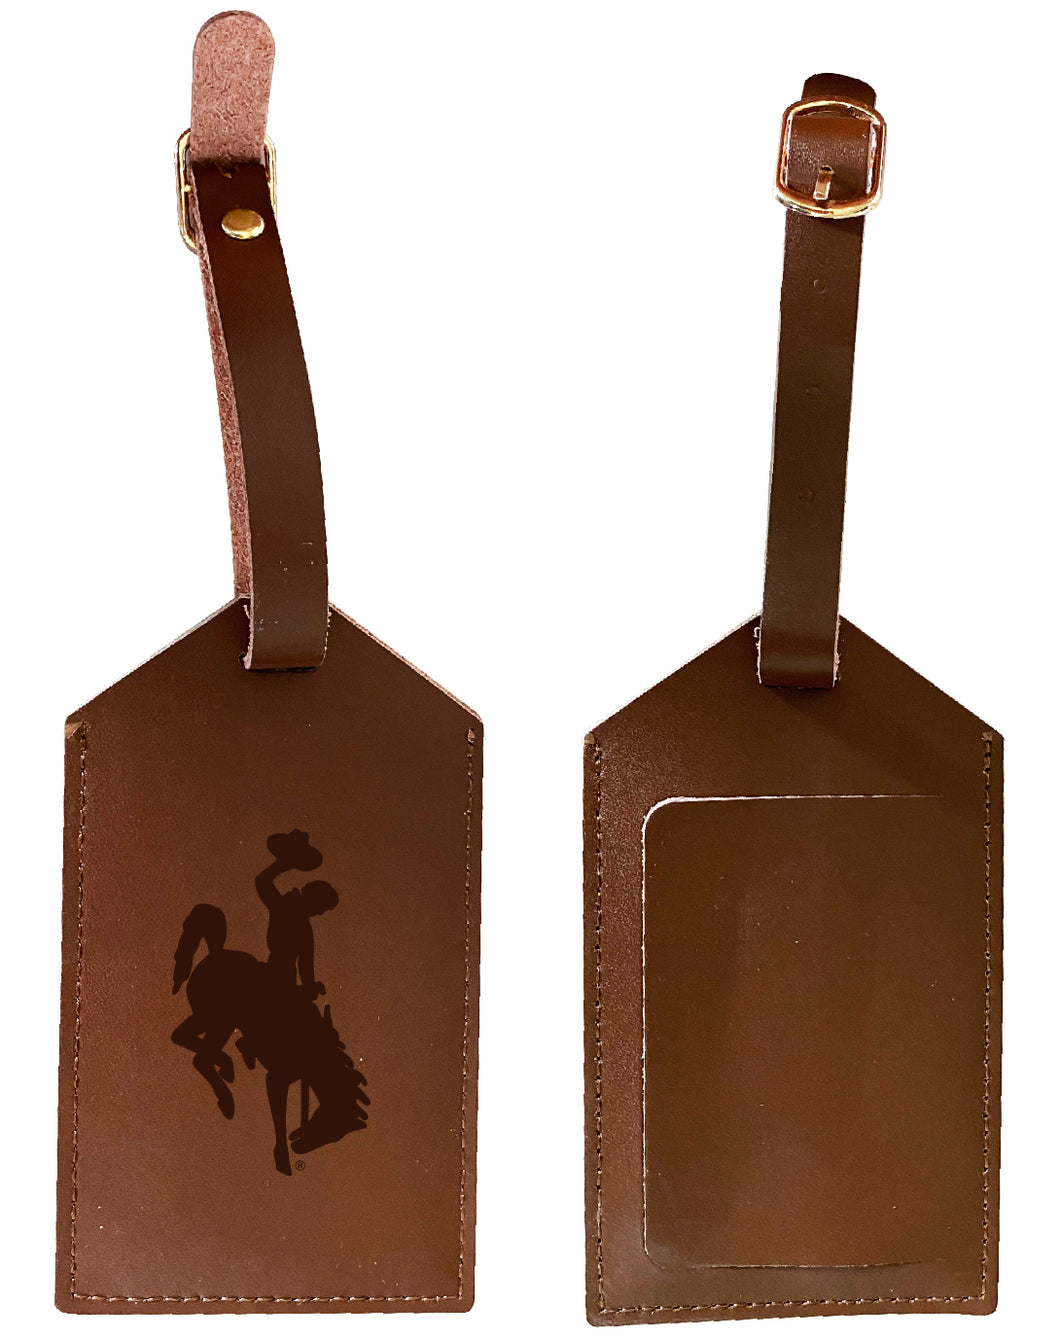 Elegant University of Wyoming NCAA Leather Luggage Tag with Engraved Logo